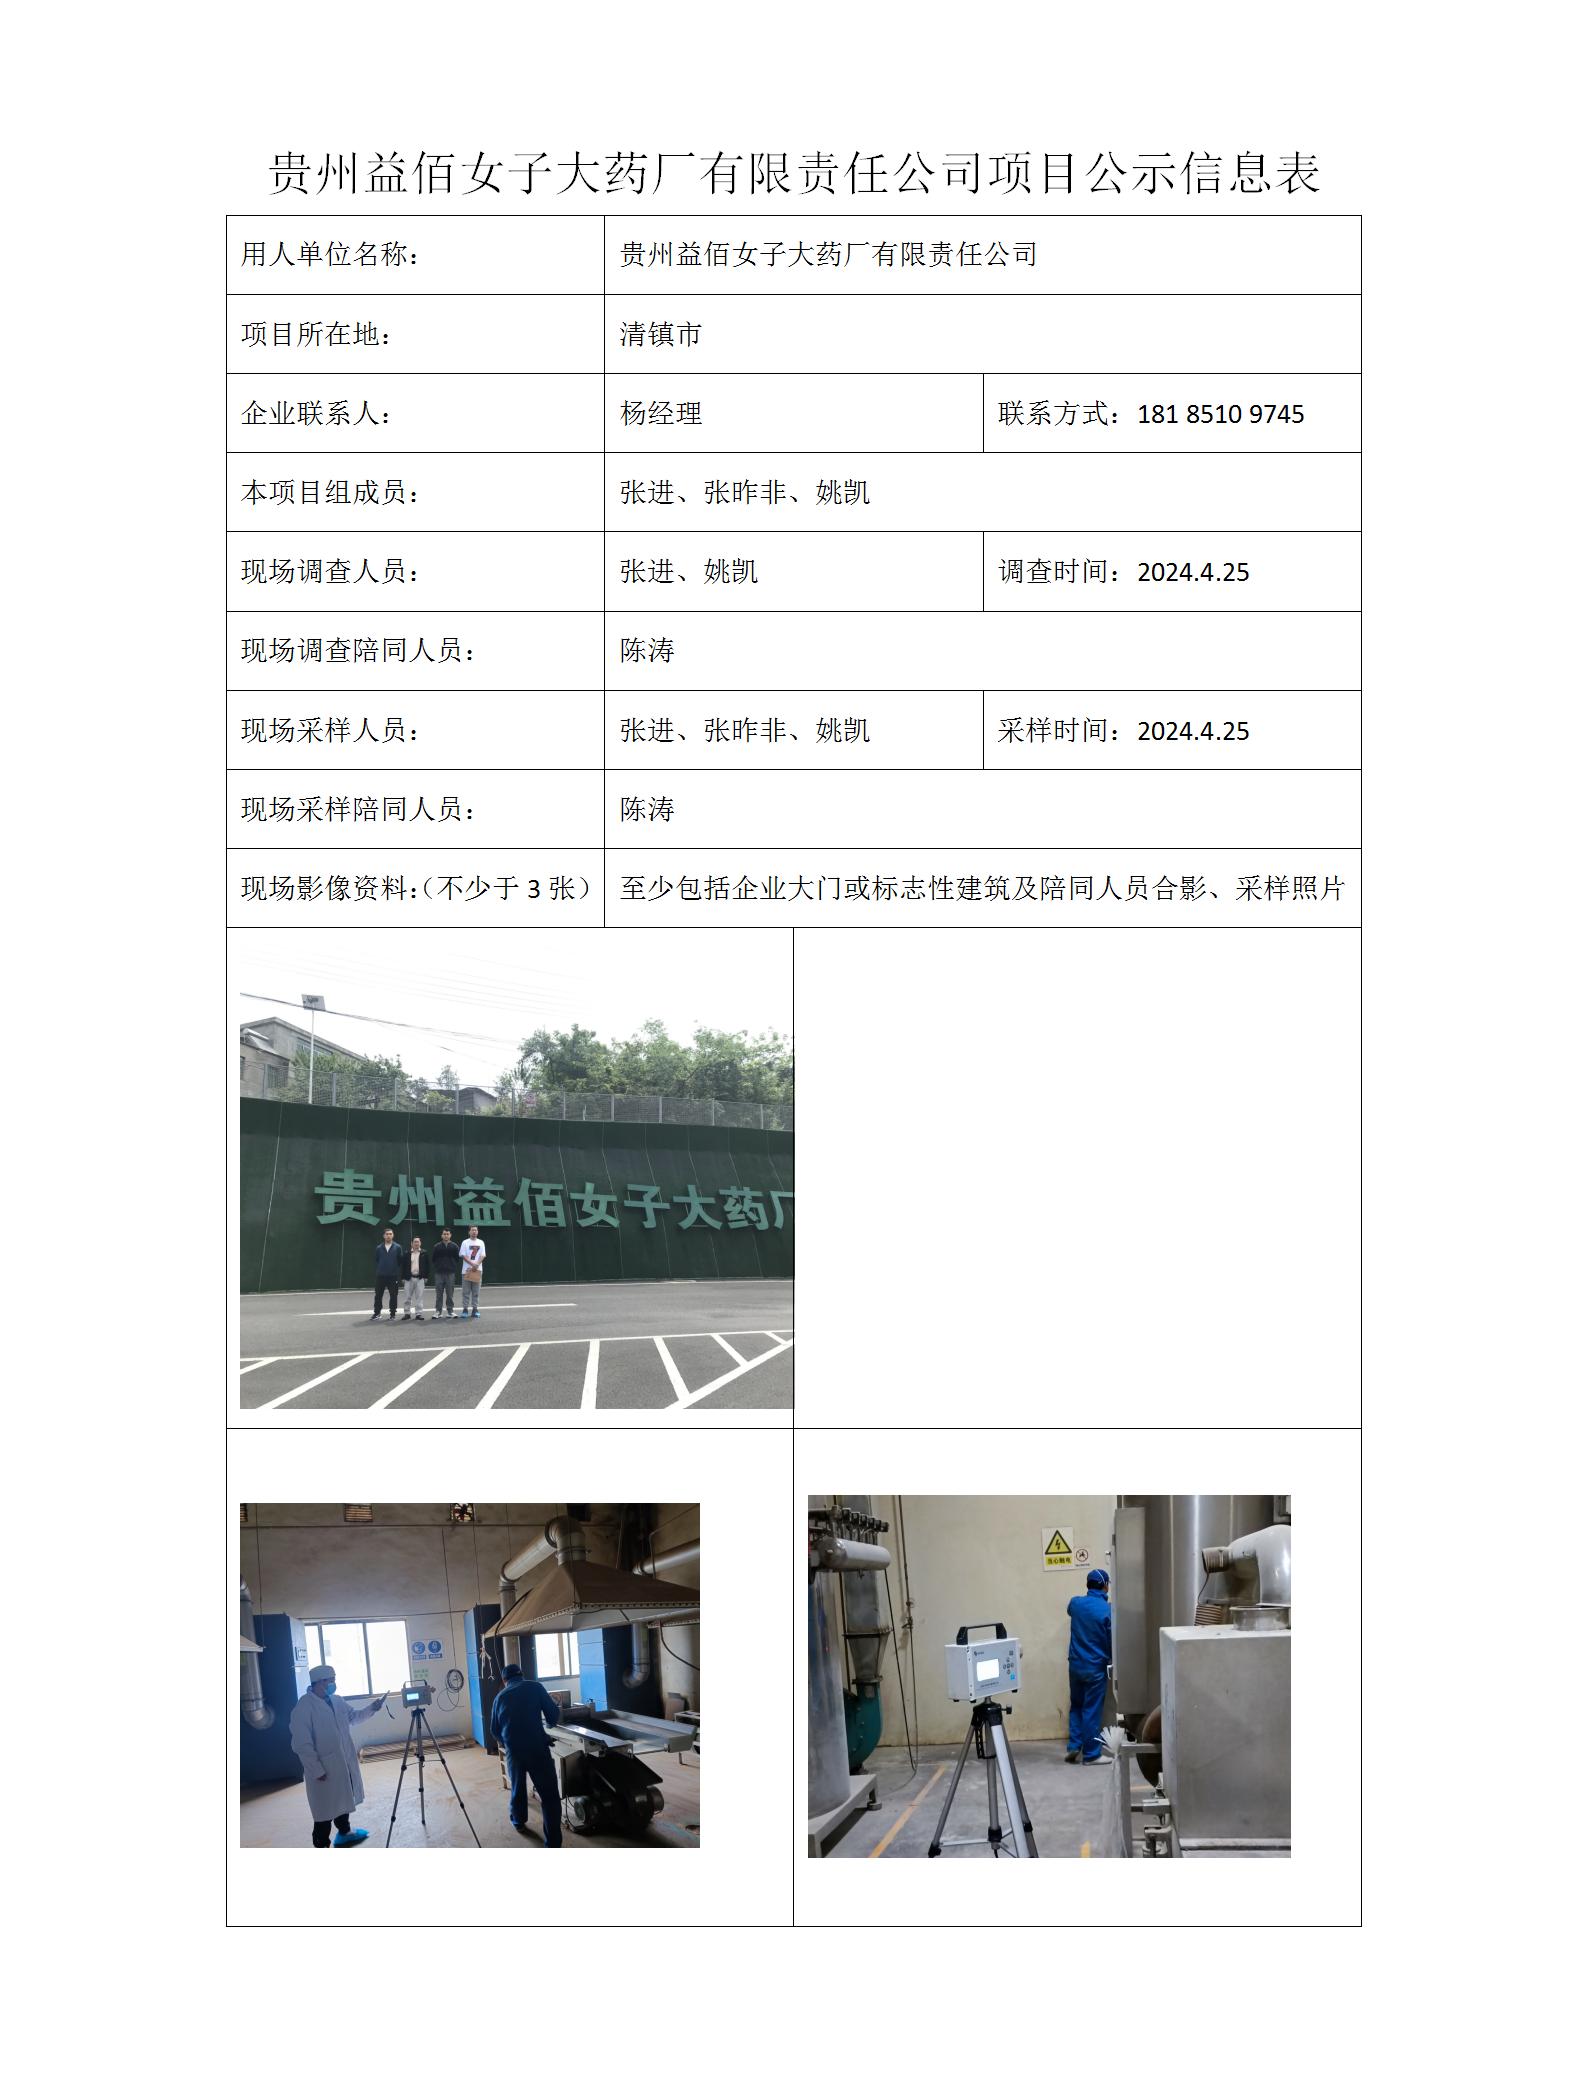 公司项目公示信息表=贵州益佰女子大药厂有限责任公司24年5月10日_01.jpg